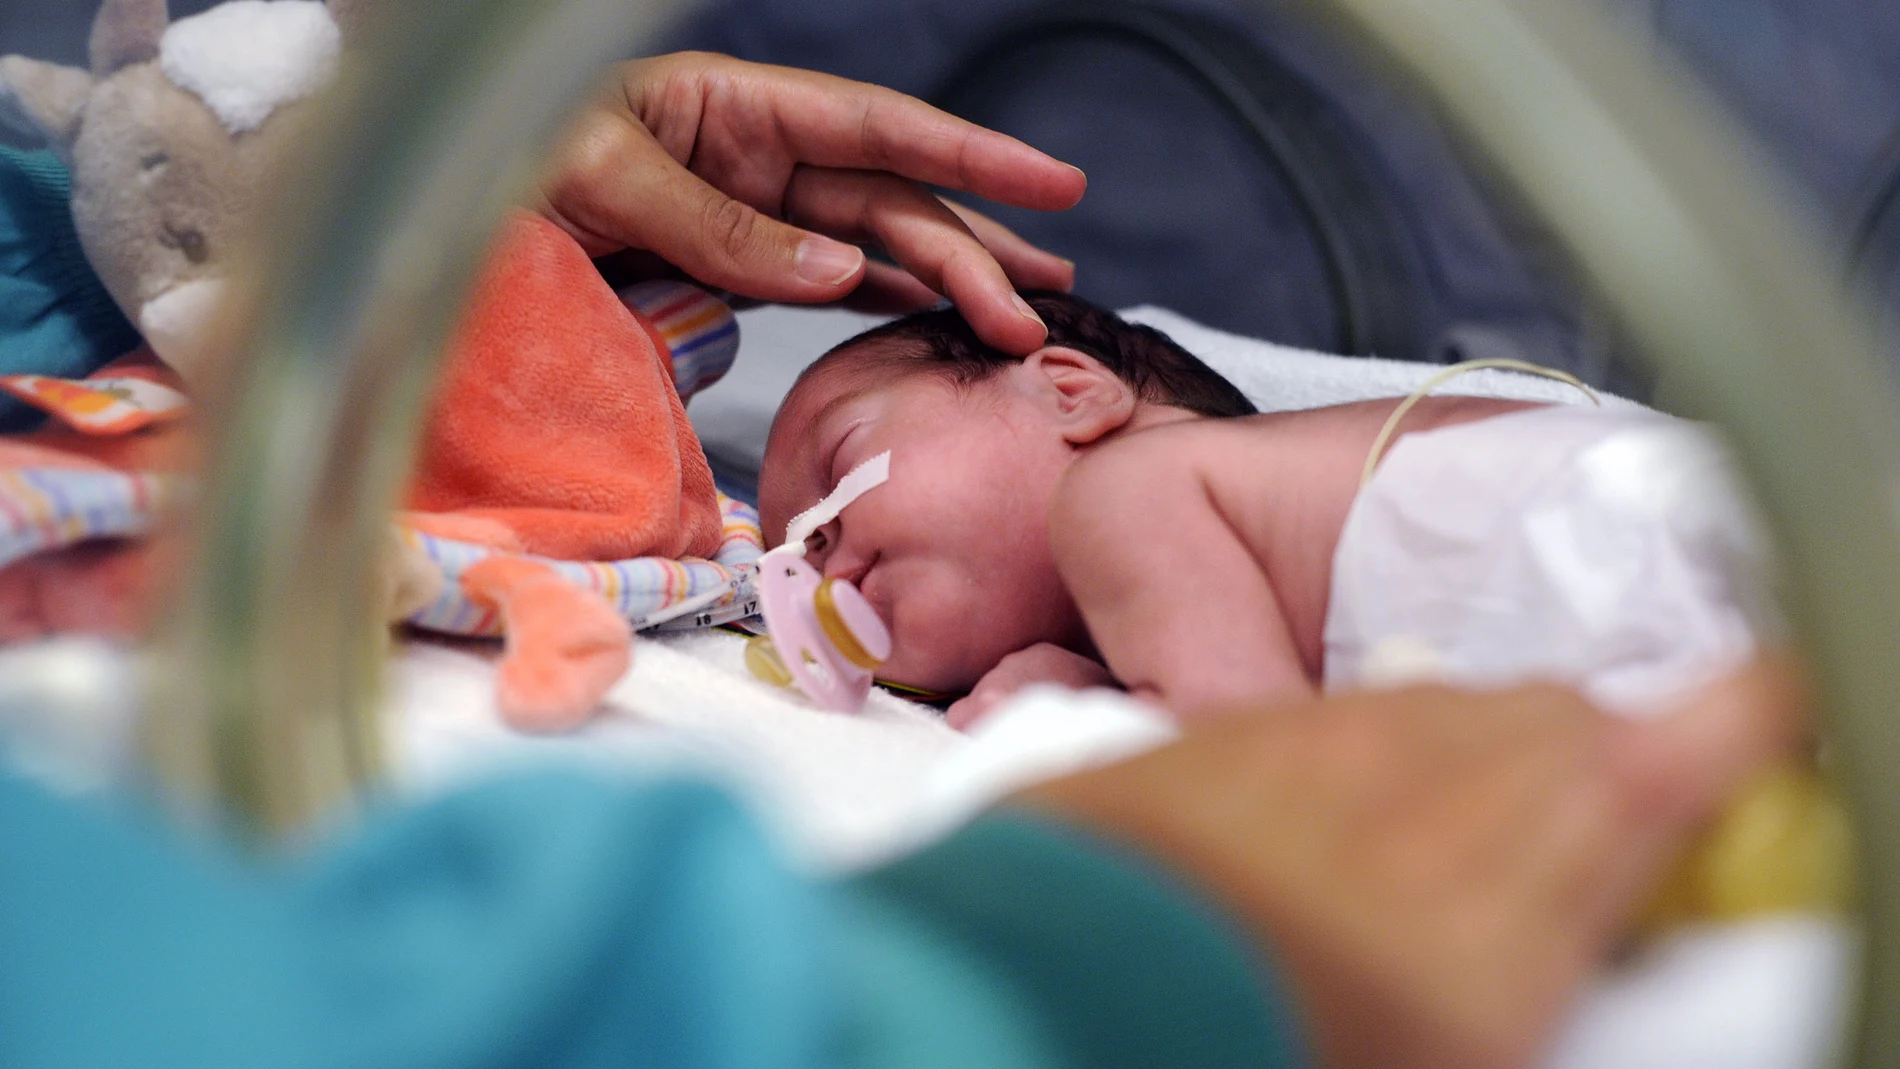 Bebé prematuro en una incubadora